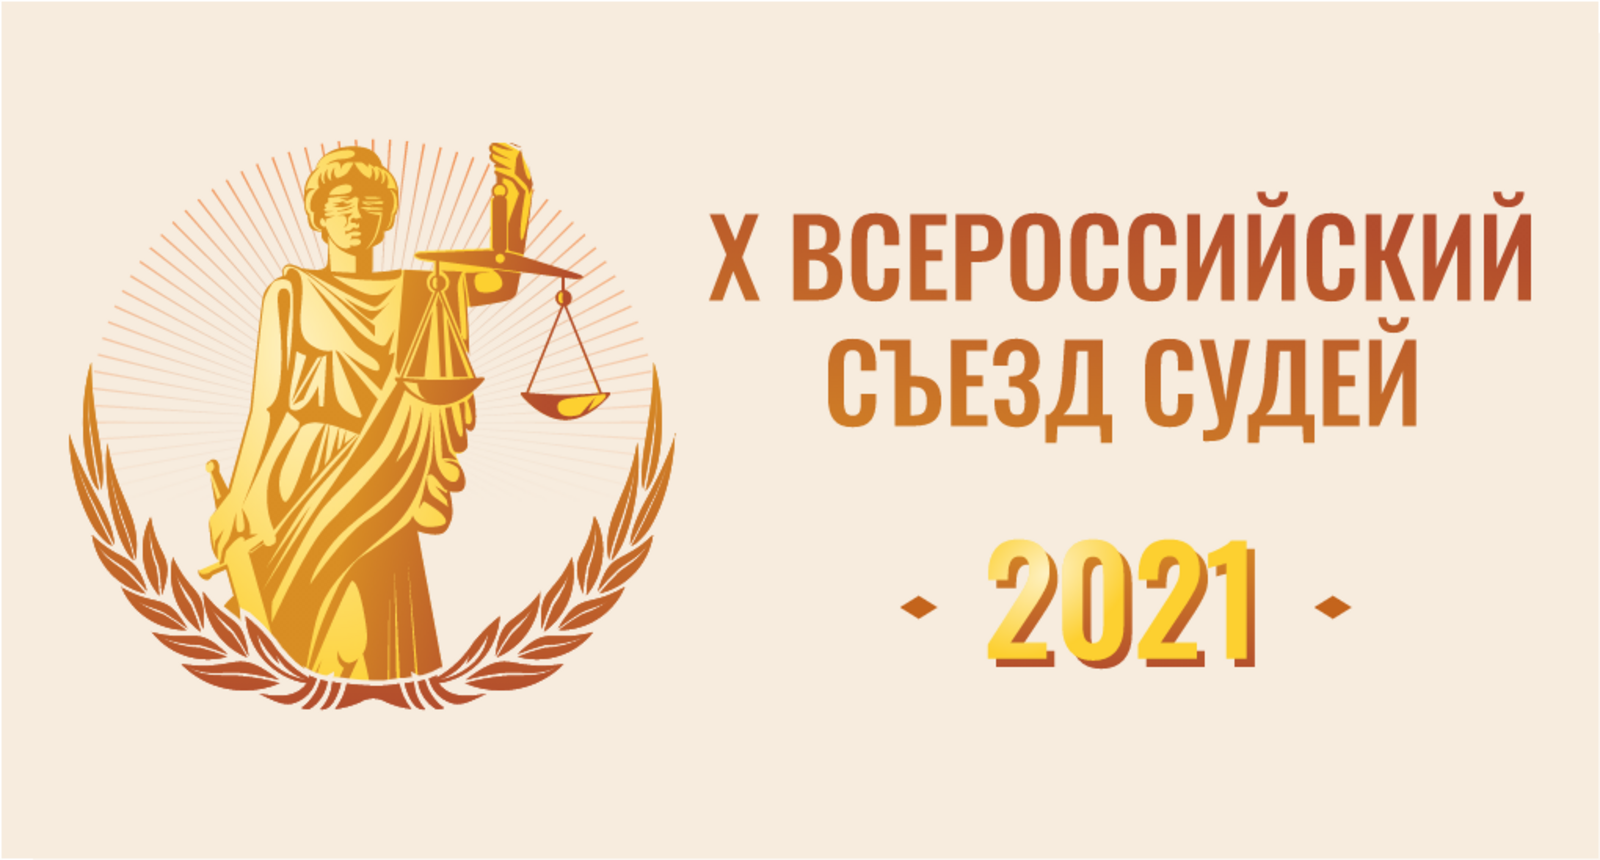 Х Всероссийский съезд судей-2022